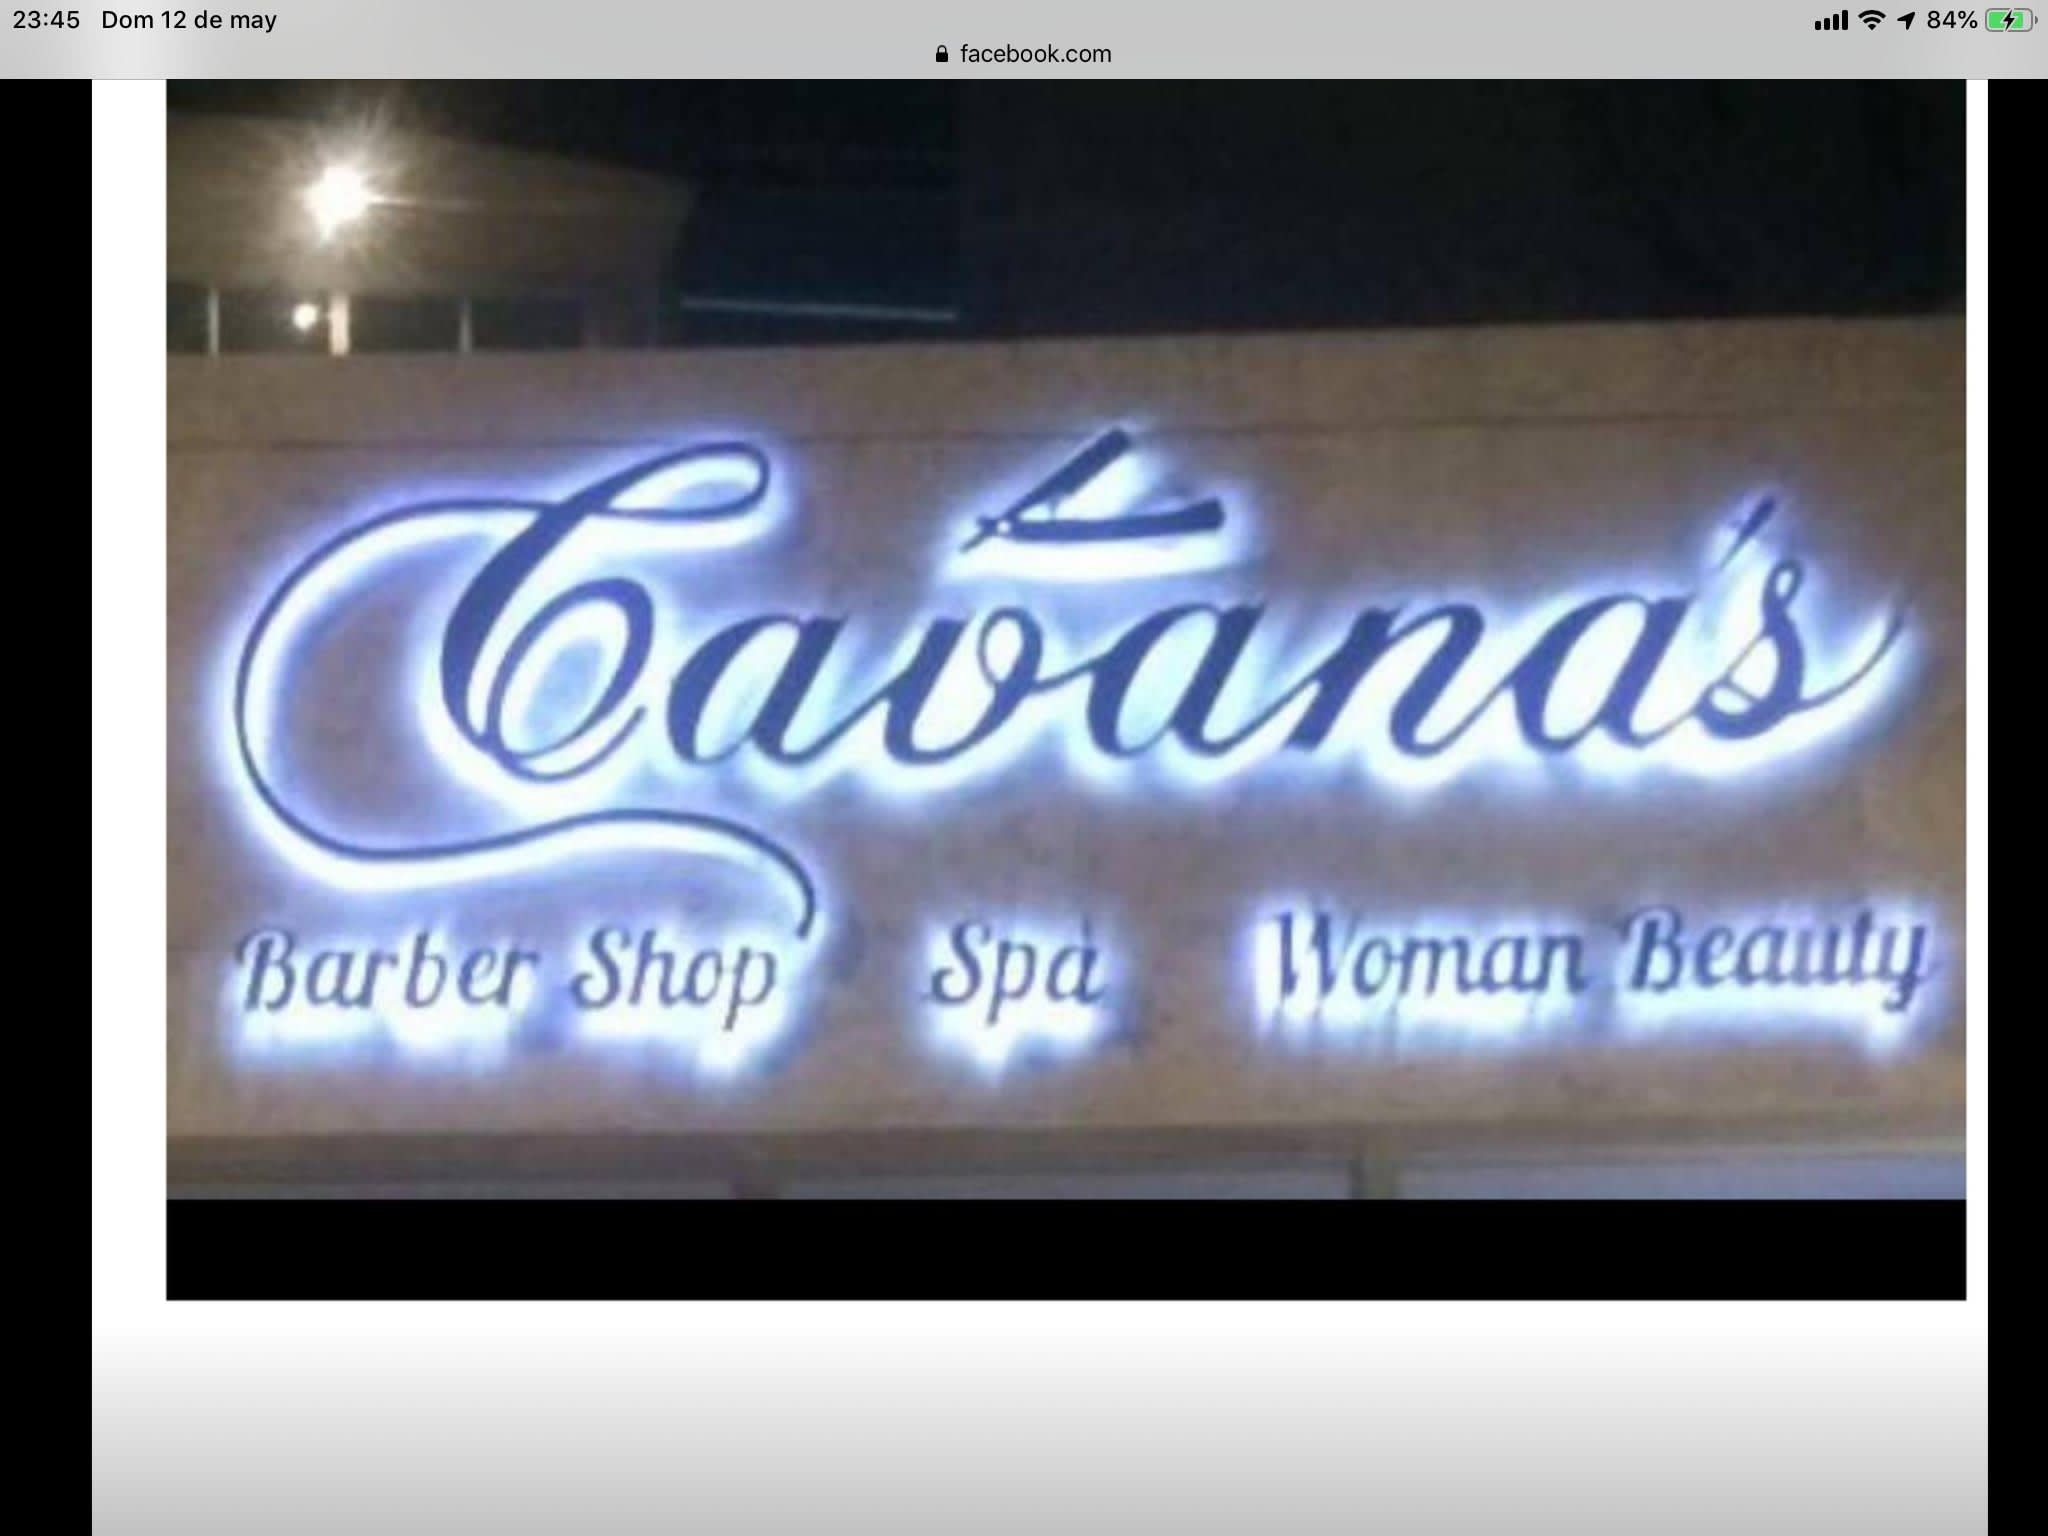 Cavana’s Barber Shop